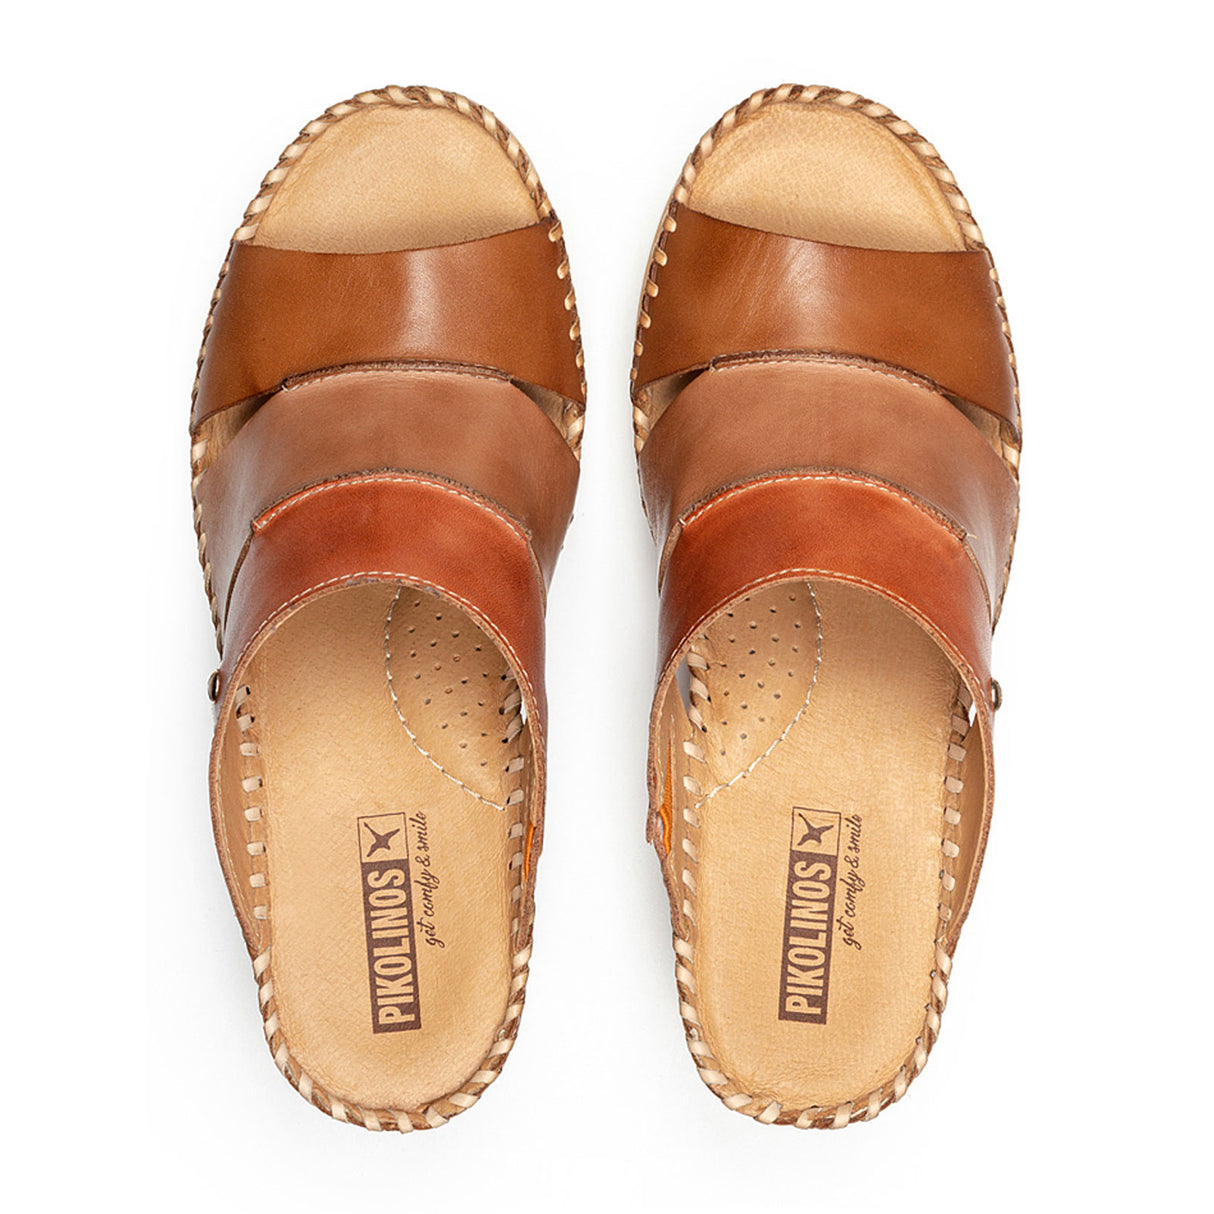 Pikolinos Aquadulce W3Z-1772C1 Sandal (Women) - Brandy Sandals - Heel/Wedge - The Heel Shoe Fitters